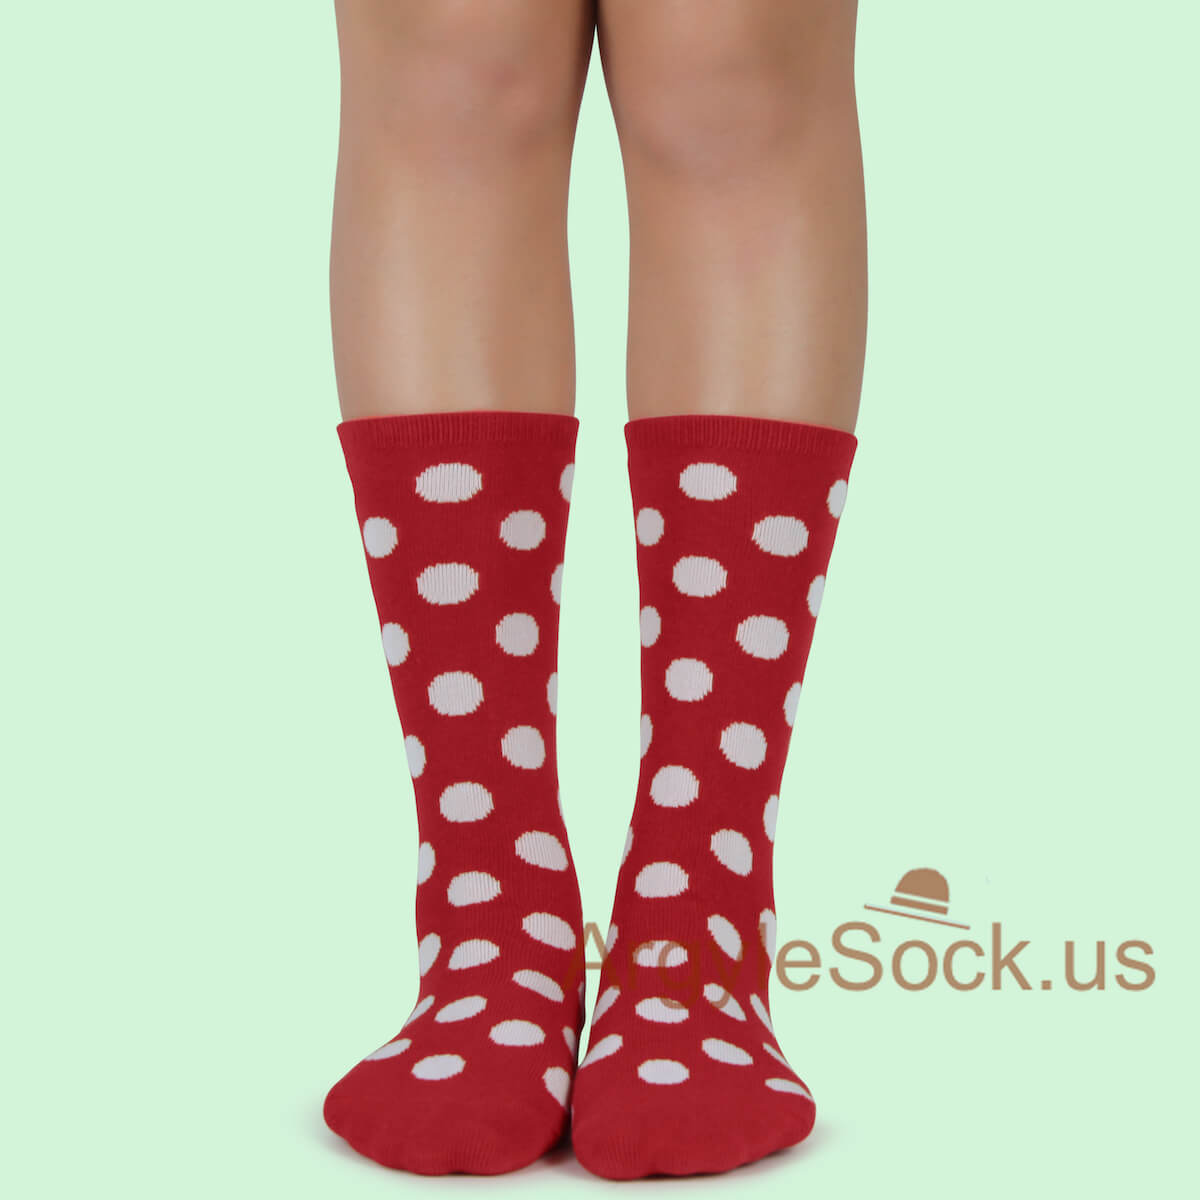 Red White Polka Dots Junior Groomsmen/Ring Bearer/Costume Socks